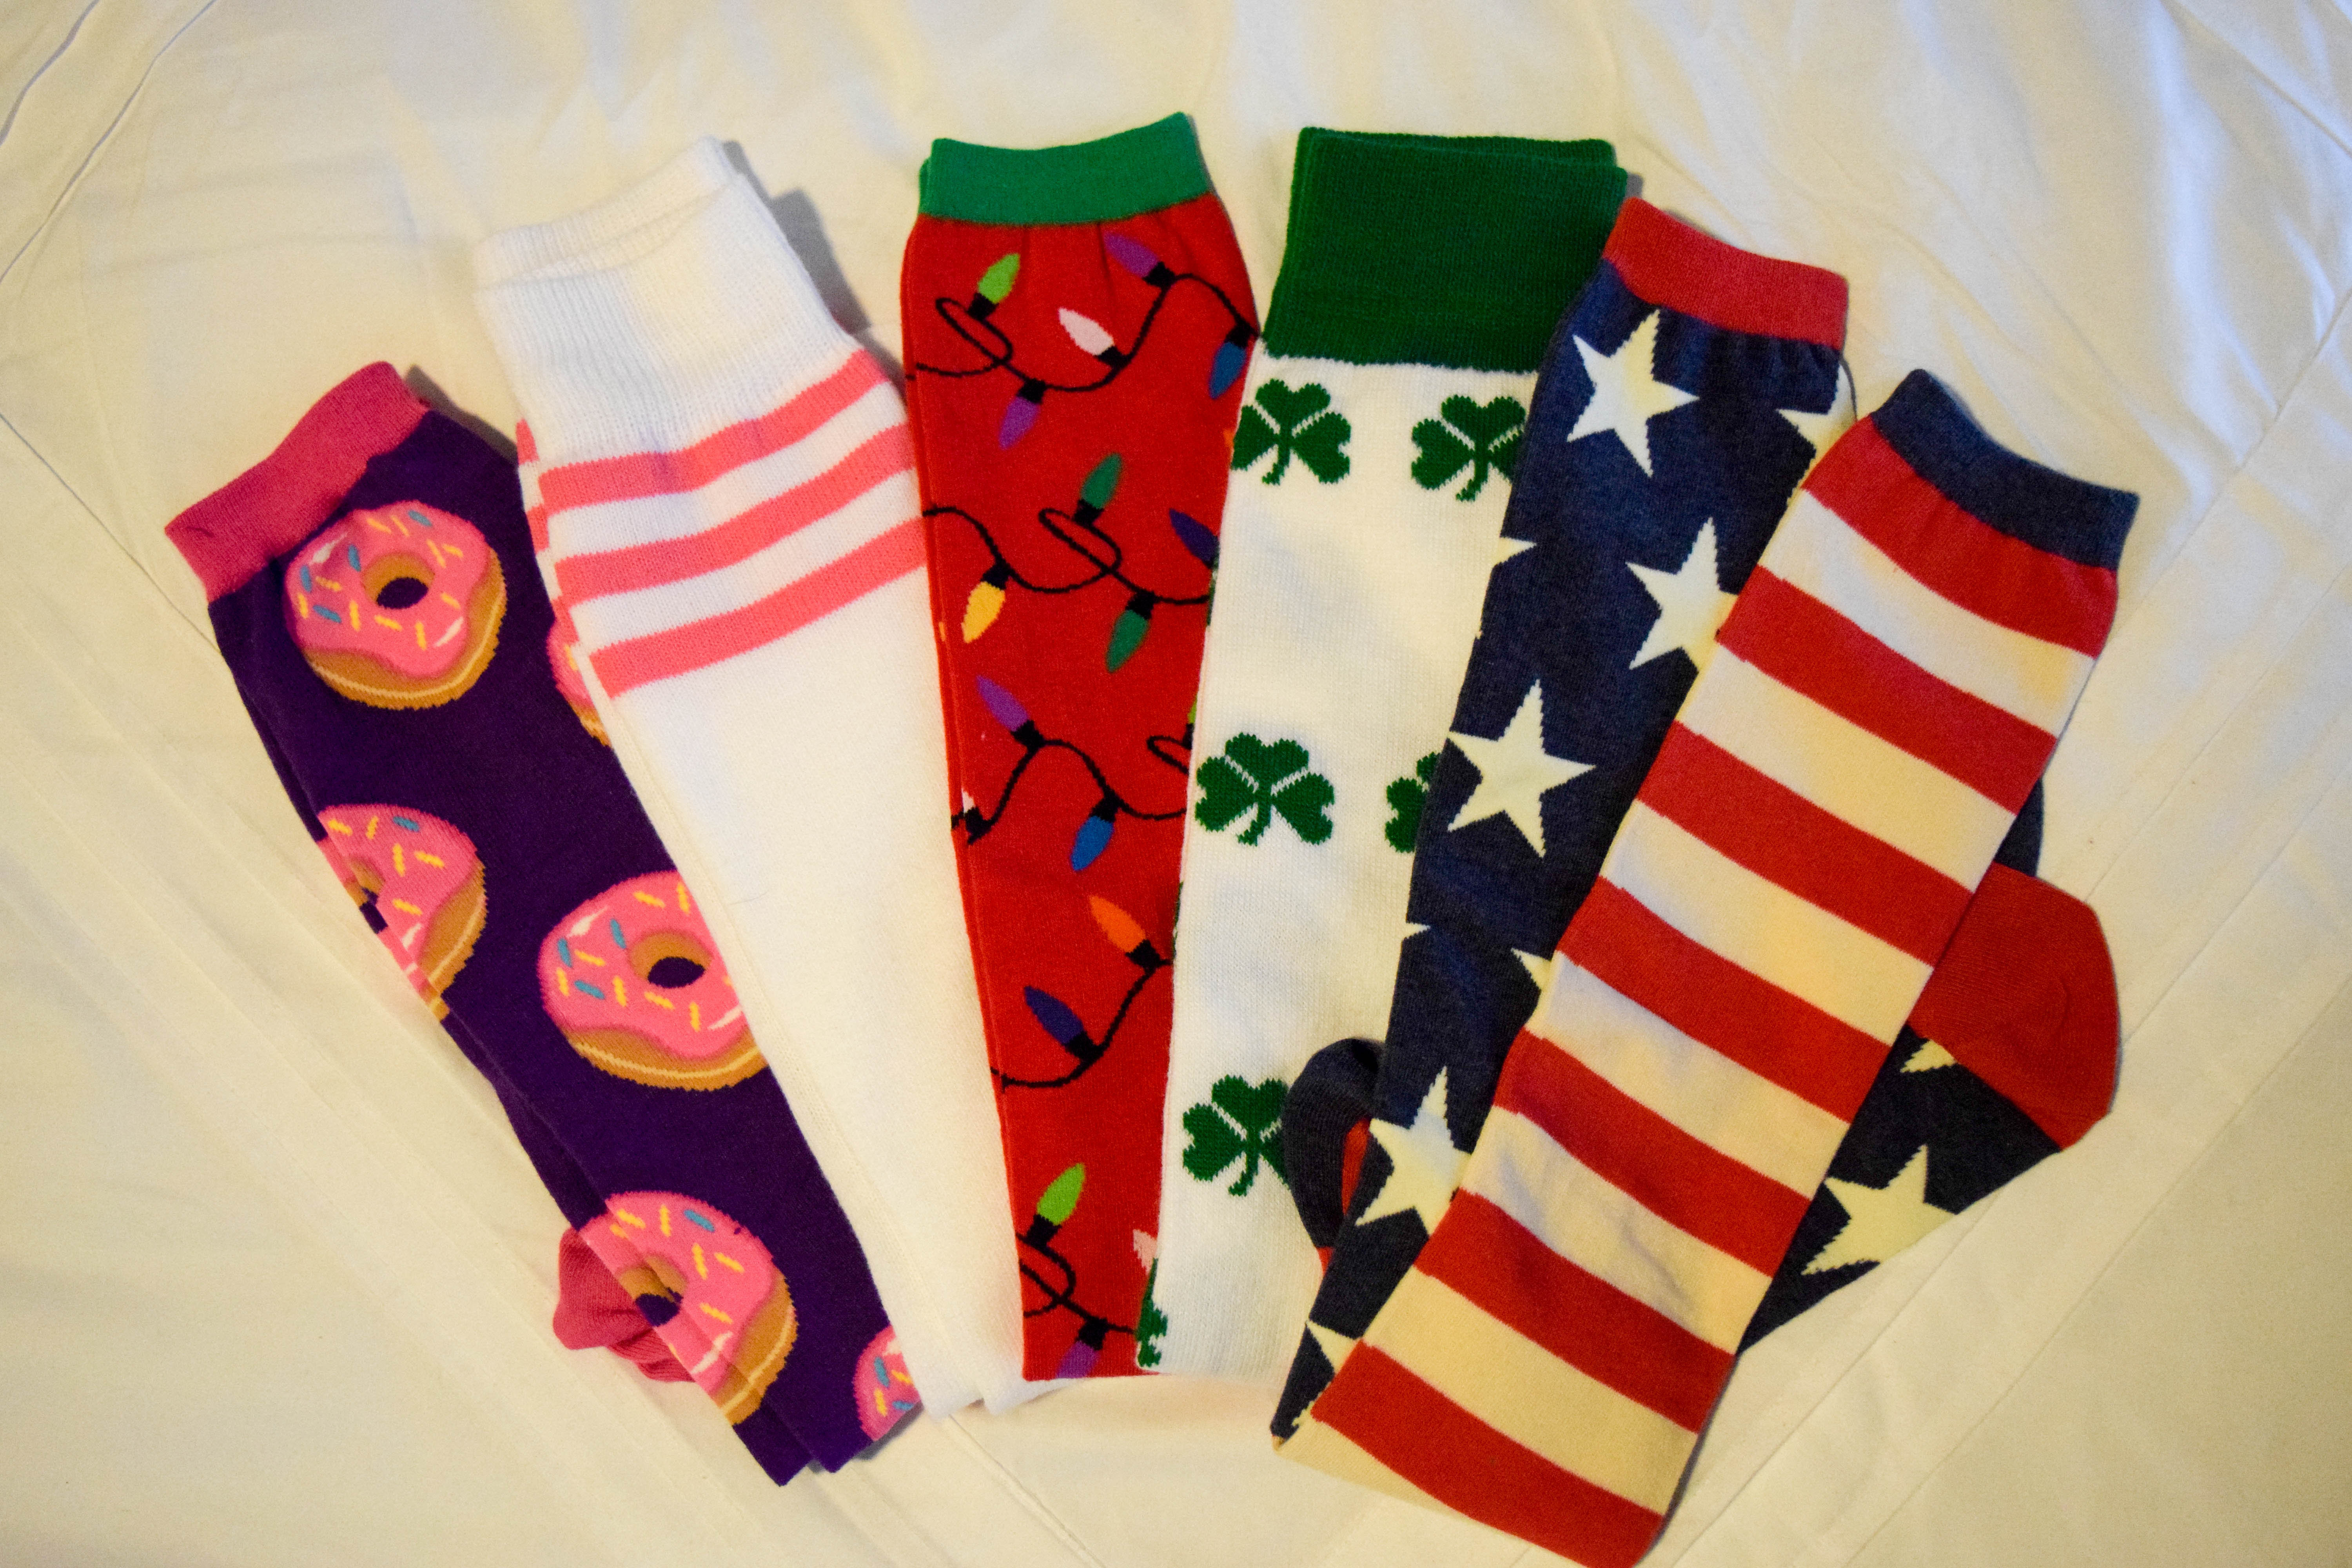 funky socks - donuts, xmas lights, shamrocks and patriotic designs